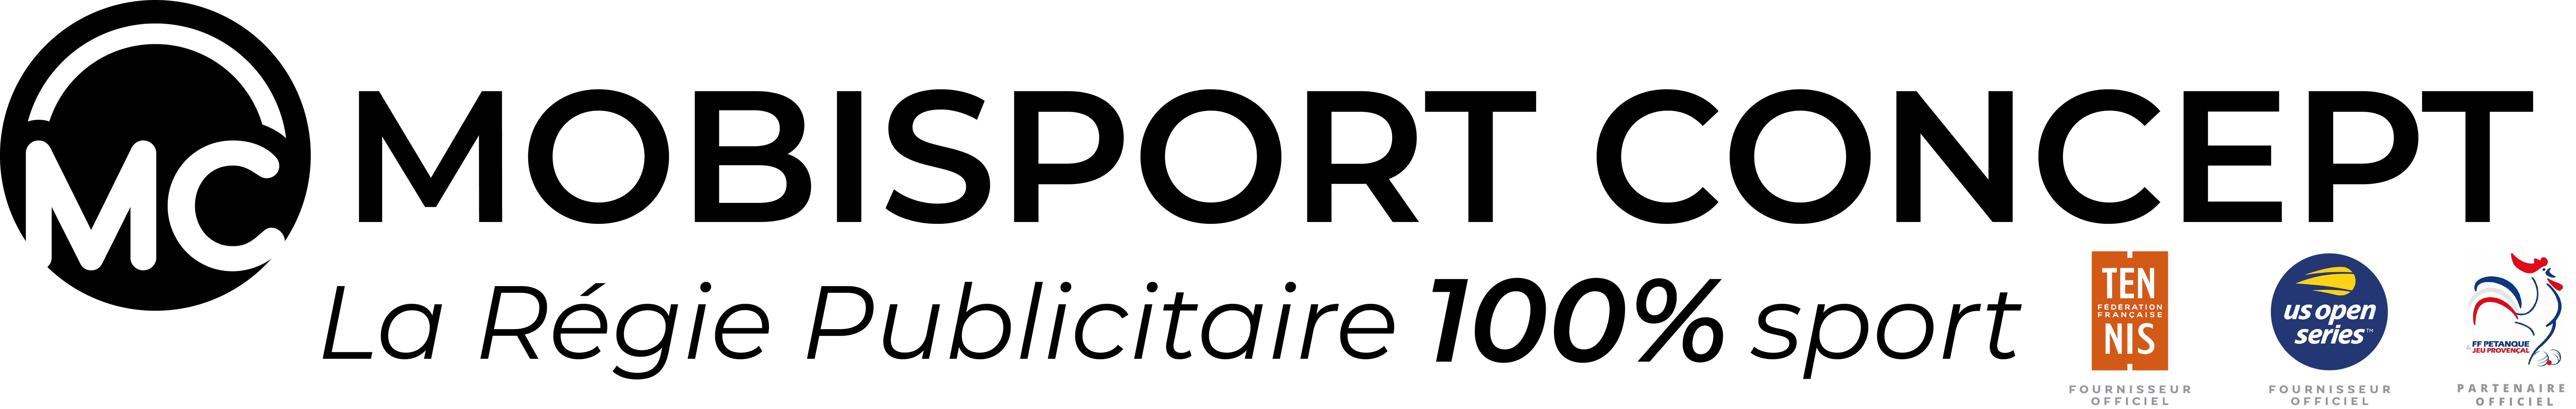 Logo Mobisport Concept noir complet